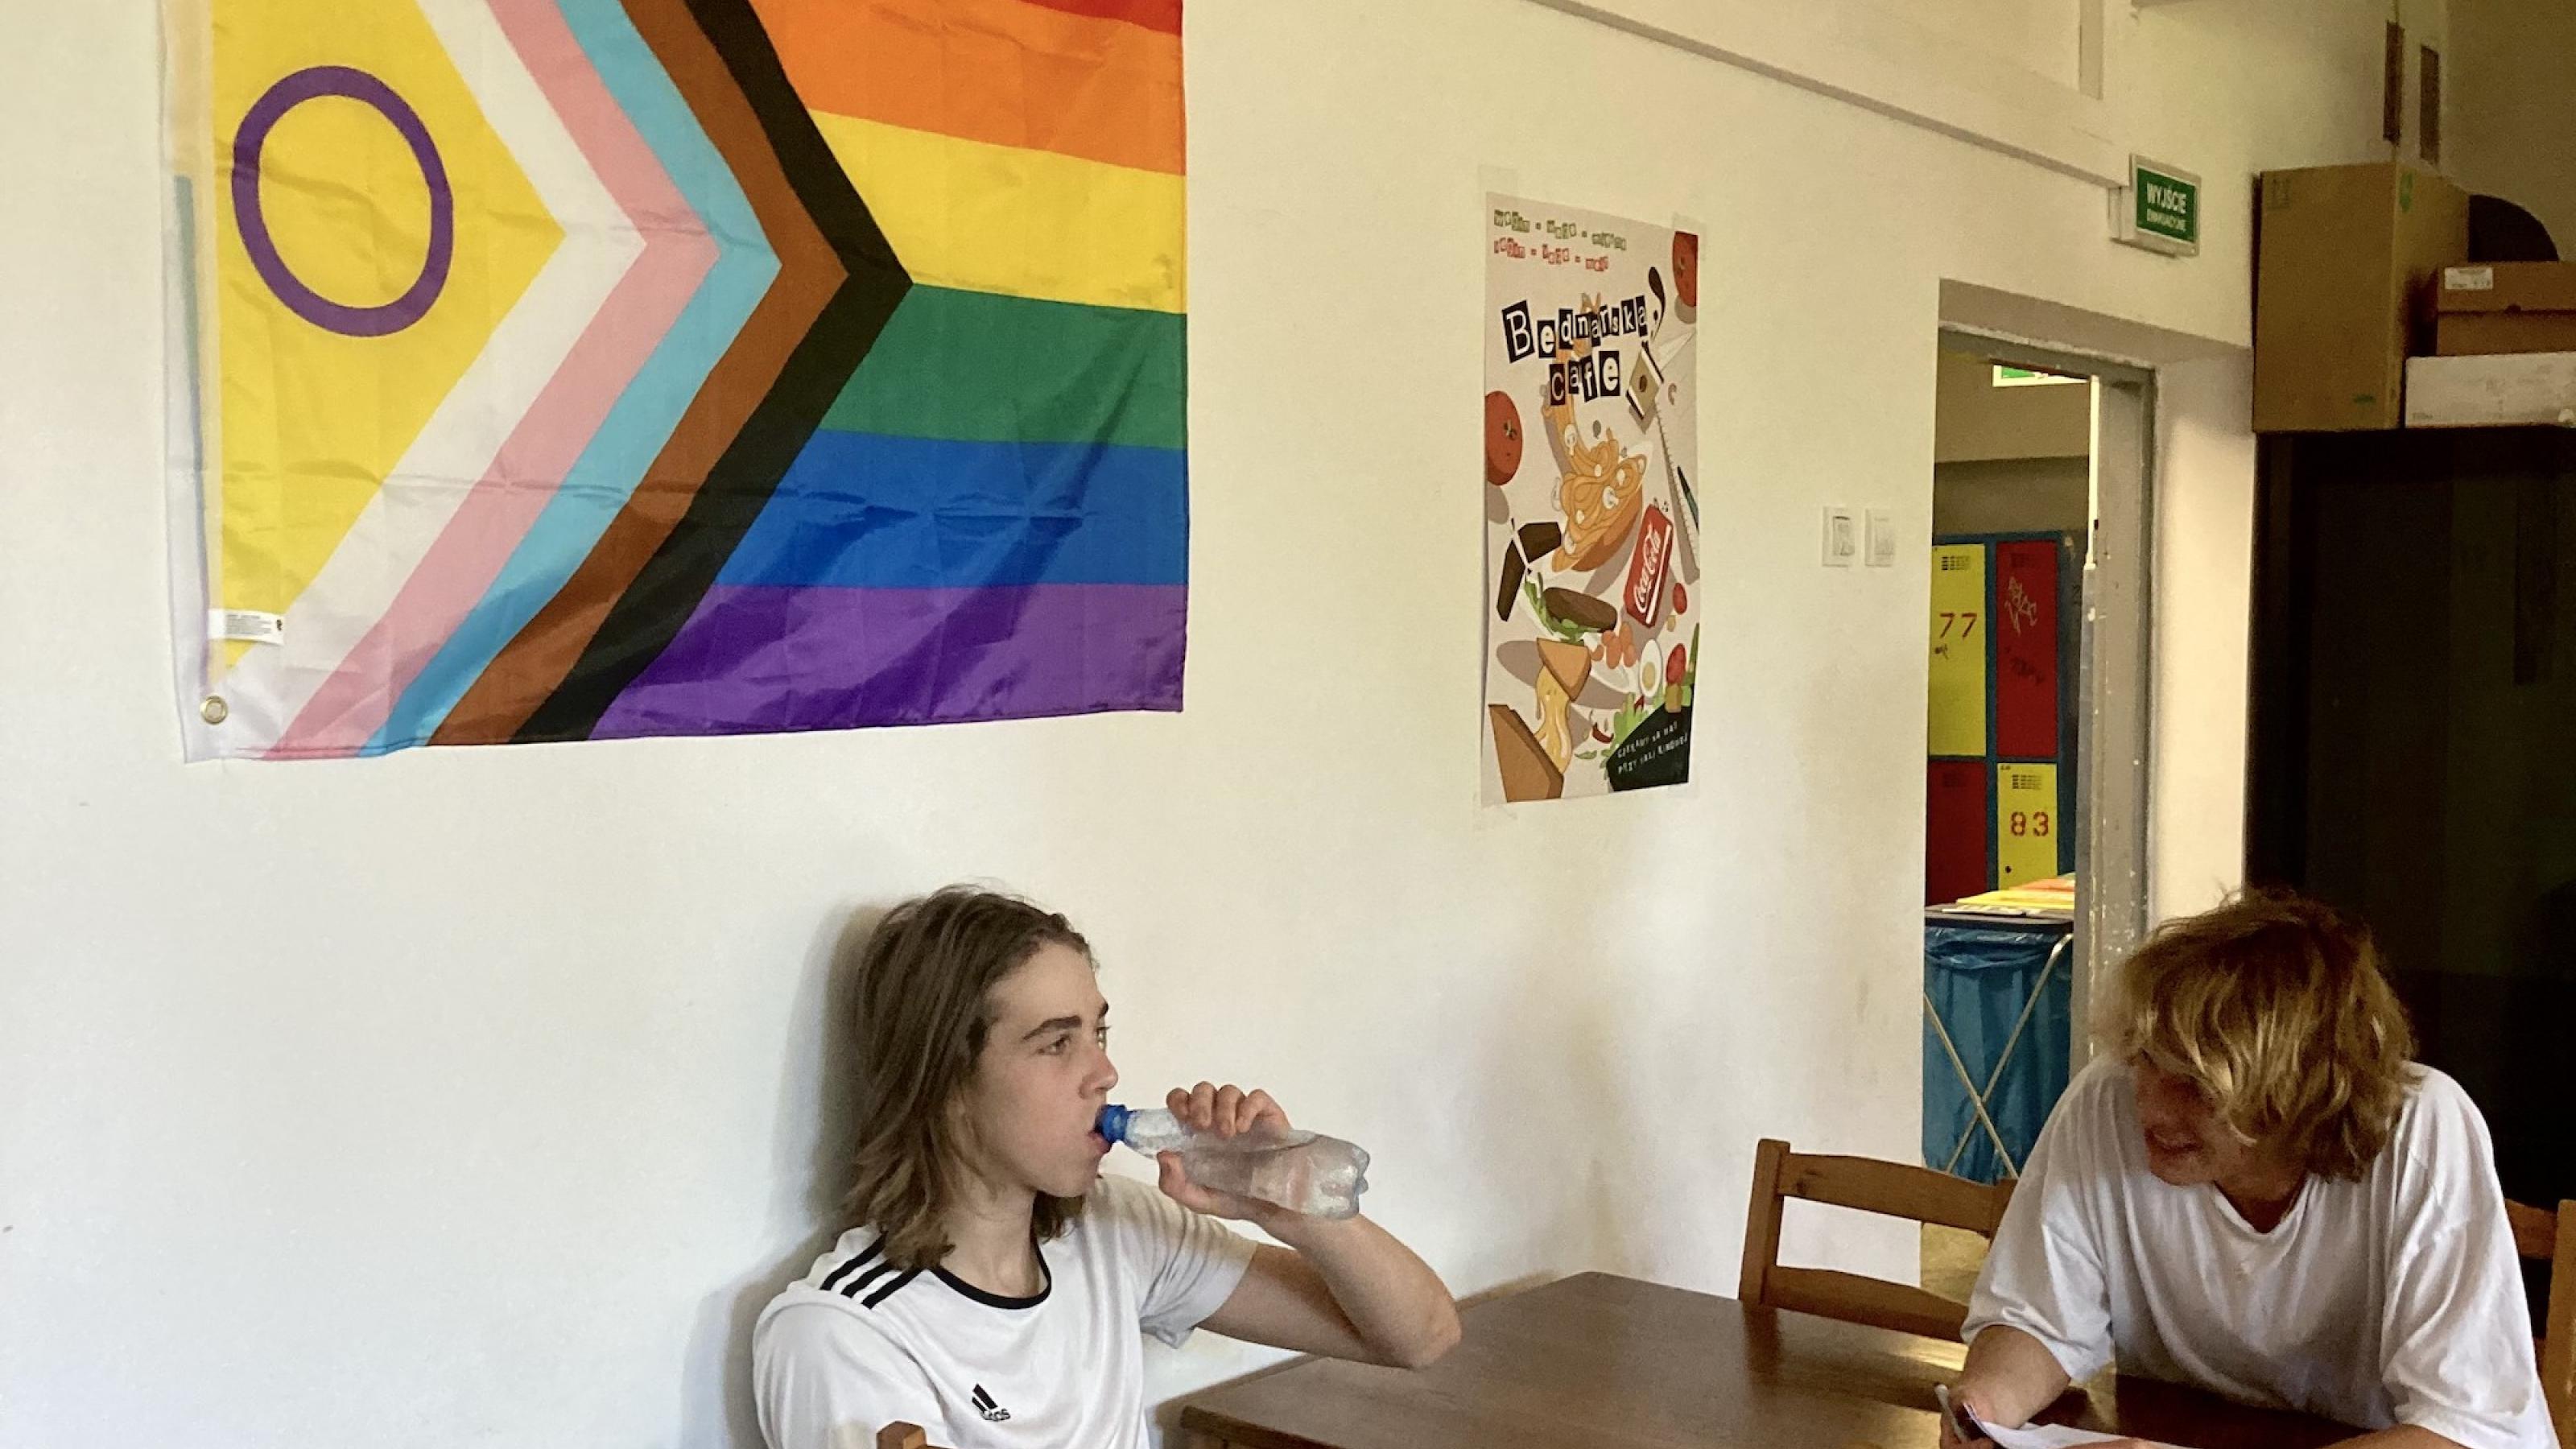 Foto von zwei Schülern in der Mensa des LGBTQ-freundlichen Gymnasiums, eine Regenbogenflagge hängt an der Wand.